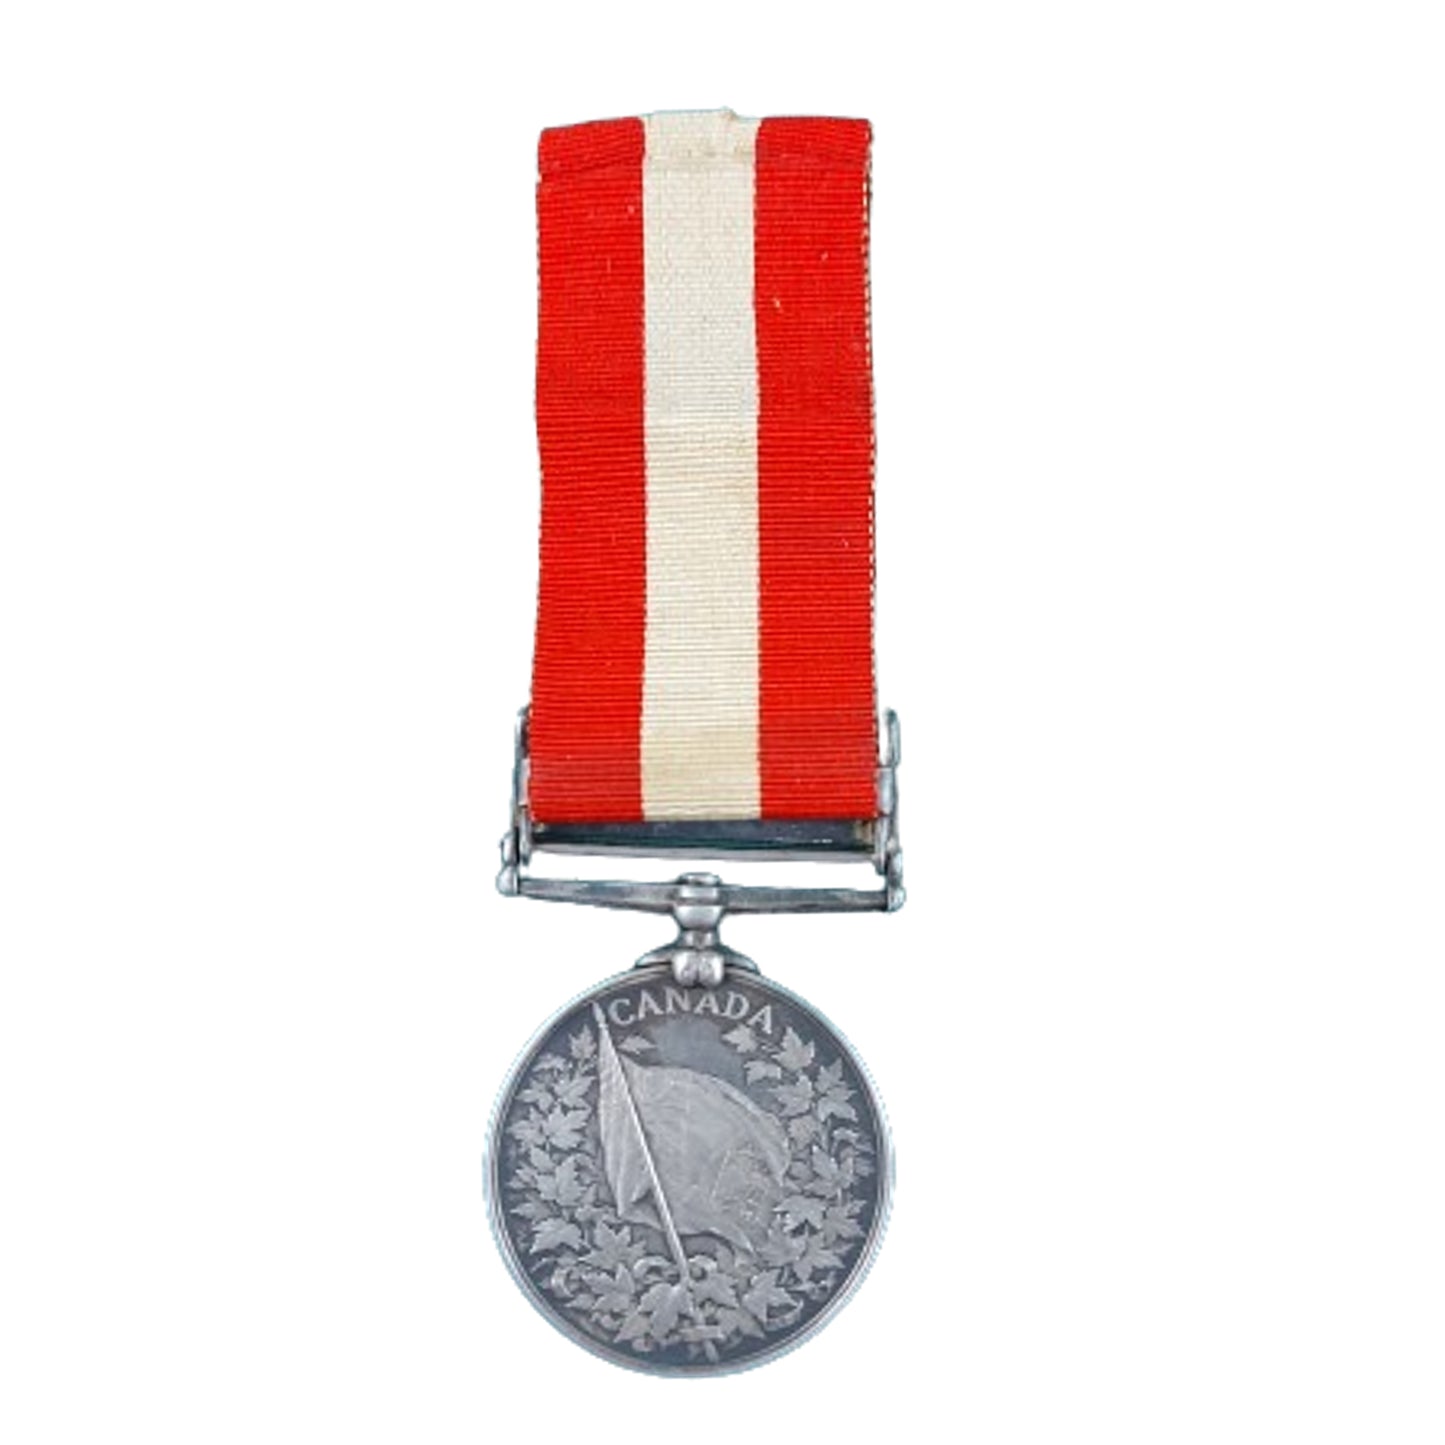 Pre-WW1 Canadian General Service Medal Fenian Raid 1866 -16th Battalion